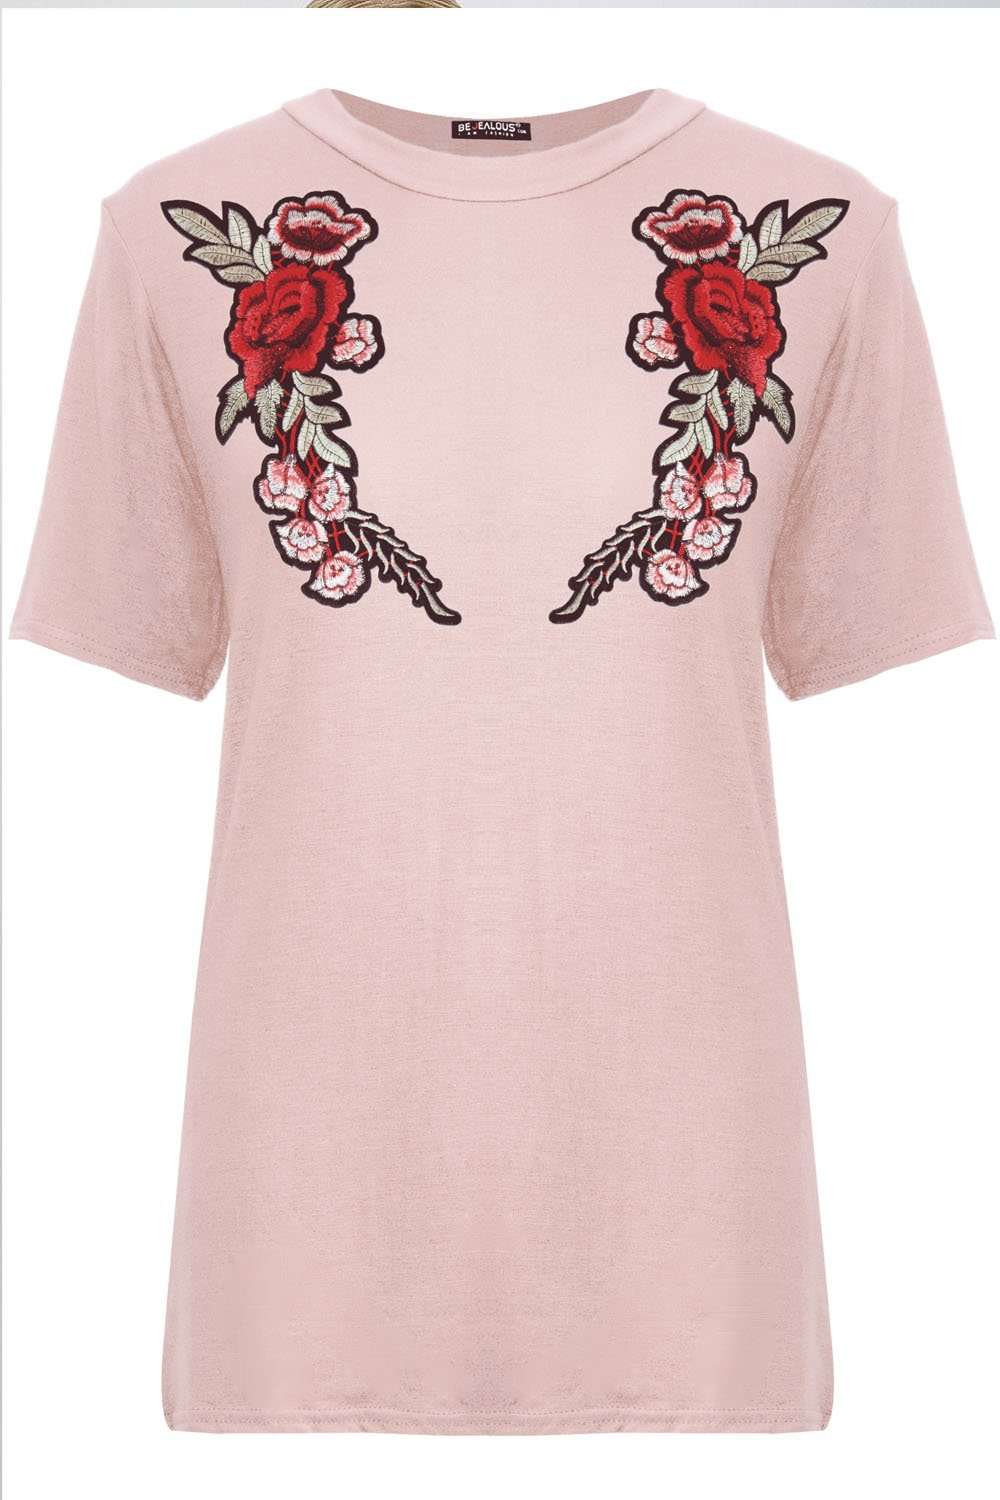 Aiyla Floral Rose Applique Baggy Tshirt - bejealous-com